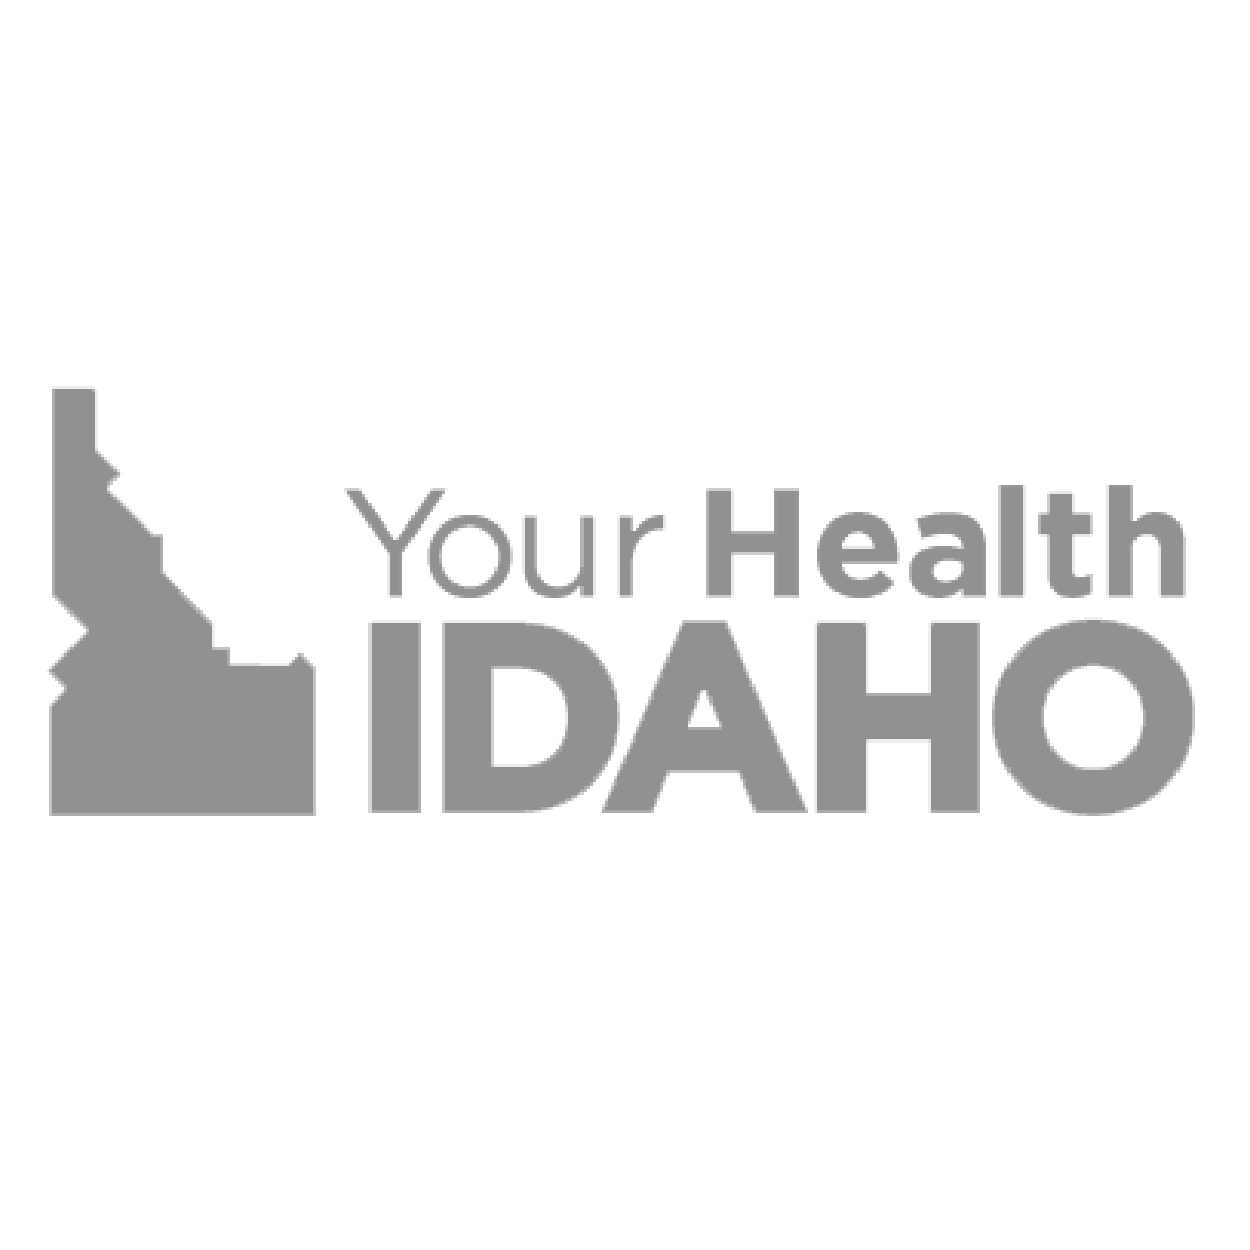 Your health Idaho logo